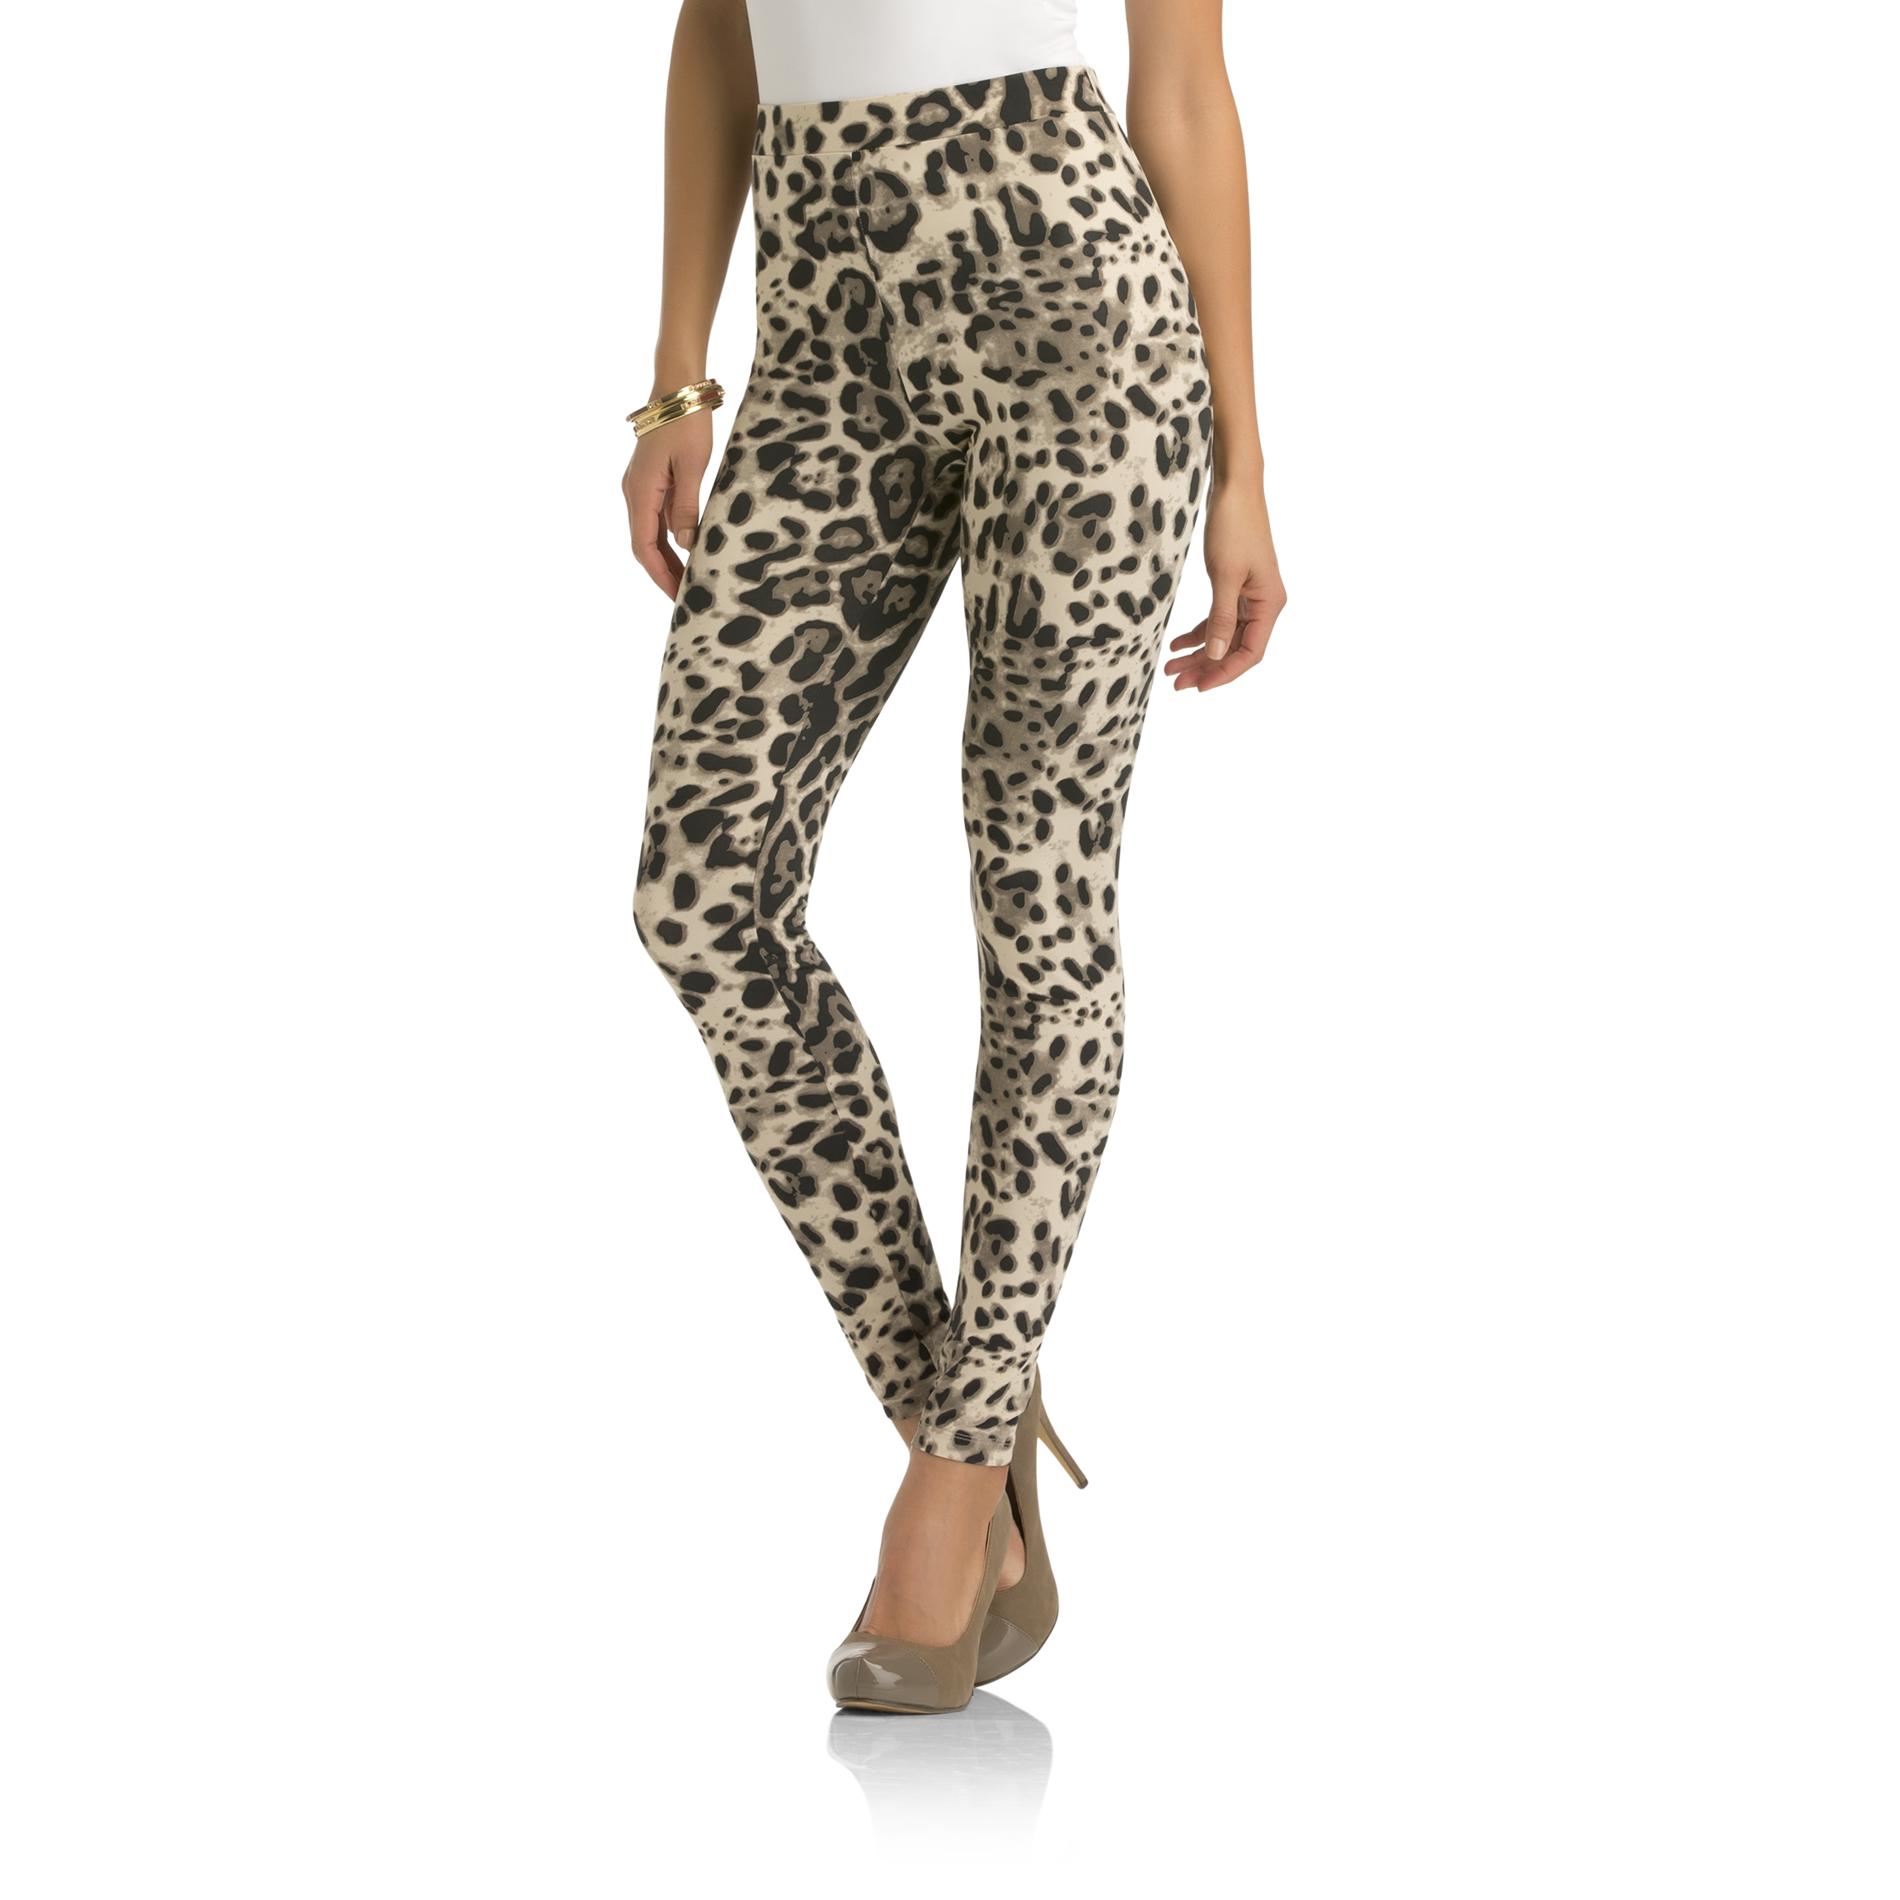 Kardashian Kollection Women's Knit Leggings - Leopard Print